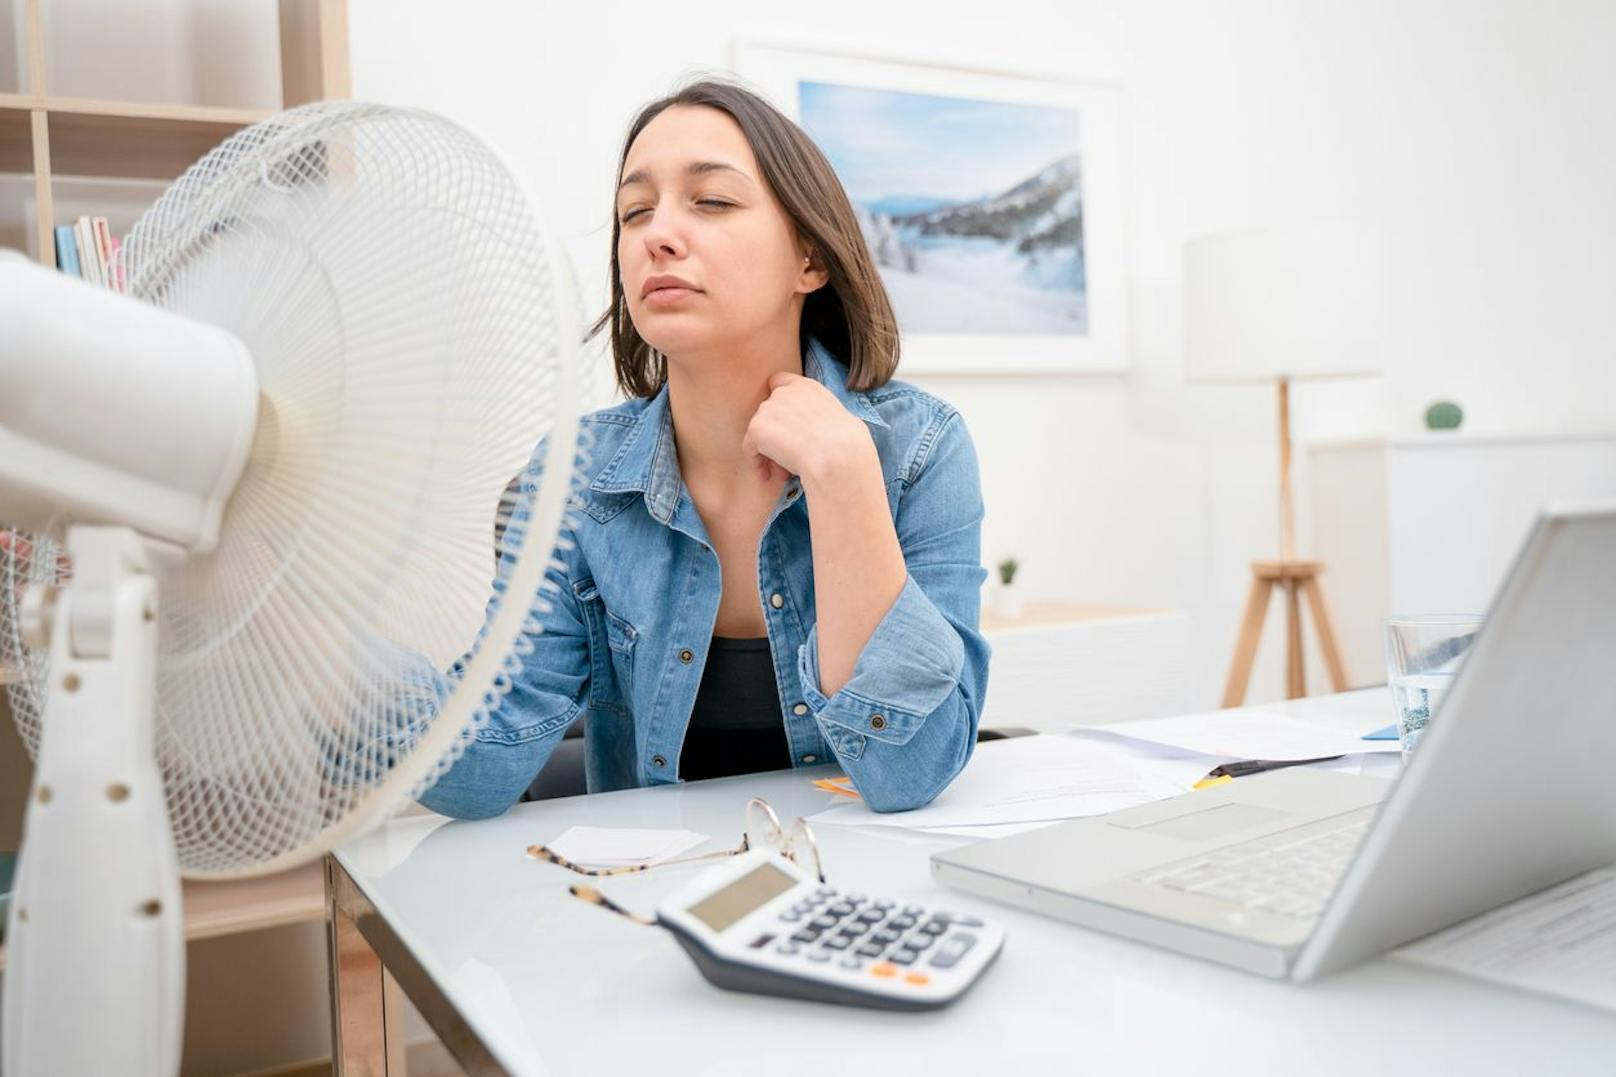 Ist keine Klimaanlage vorhanden, kann auch ein Ventilator im Büro für Abkühlung sorgen.